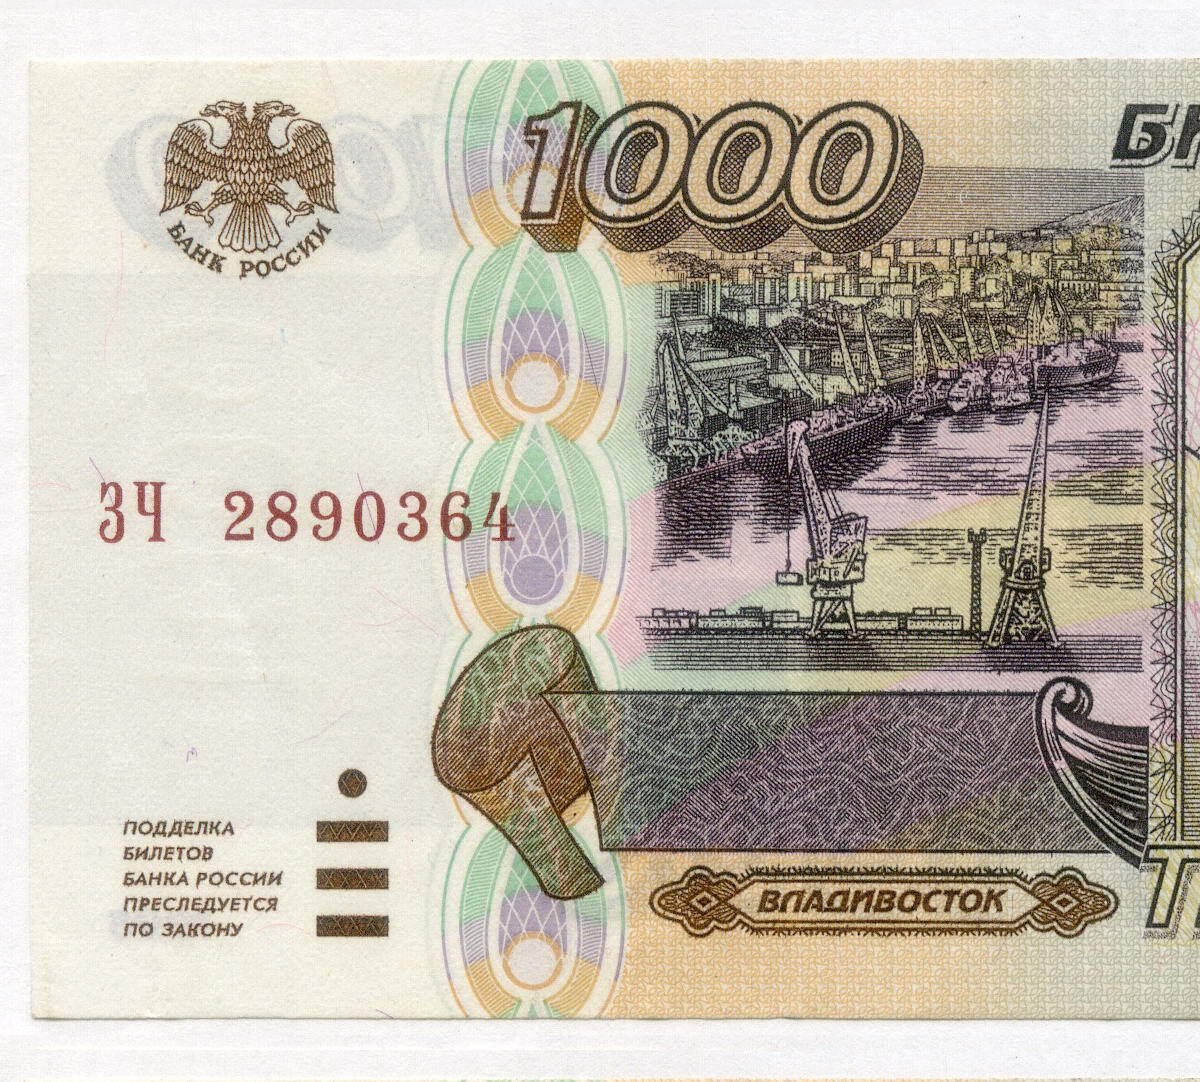 1000 рублей год. 1000 Рублей 1995 года. Банкнота 1000 рублей 1995 года. Тысяча рублей 1995 года. Купюра 1000 рублей 1995 года.